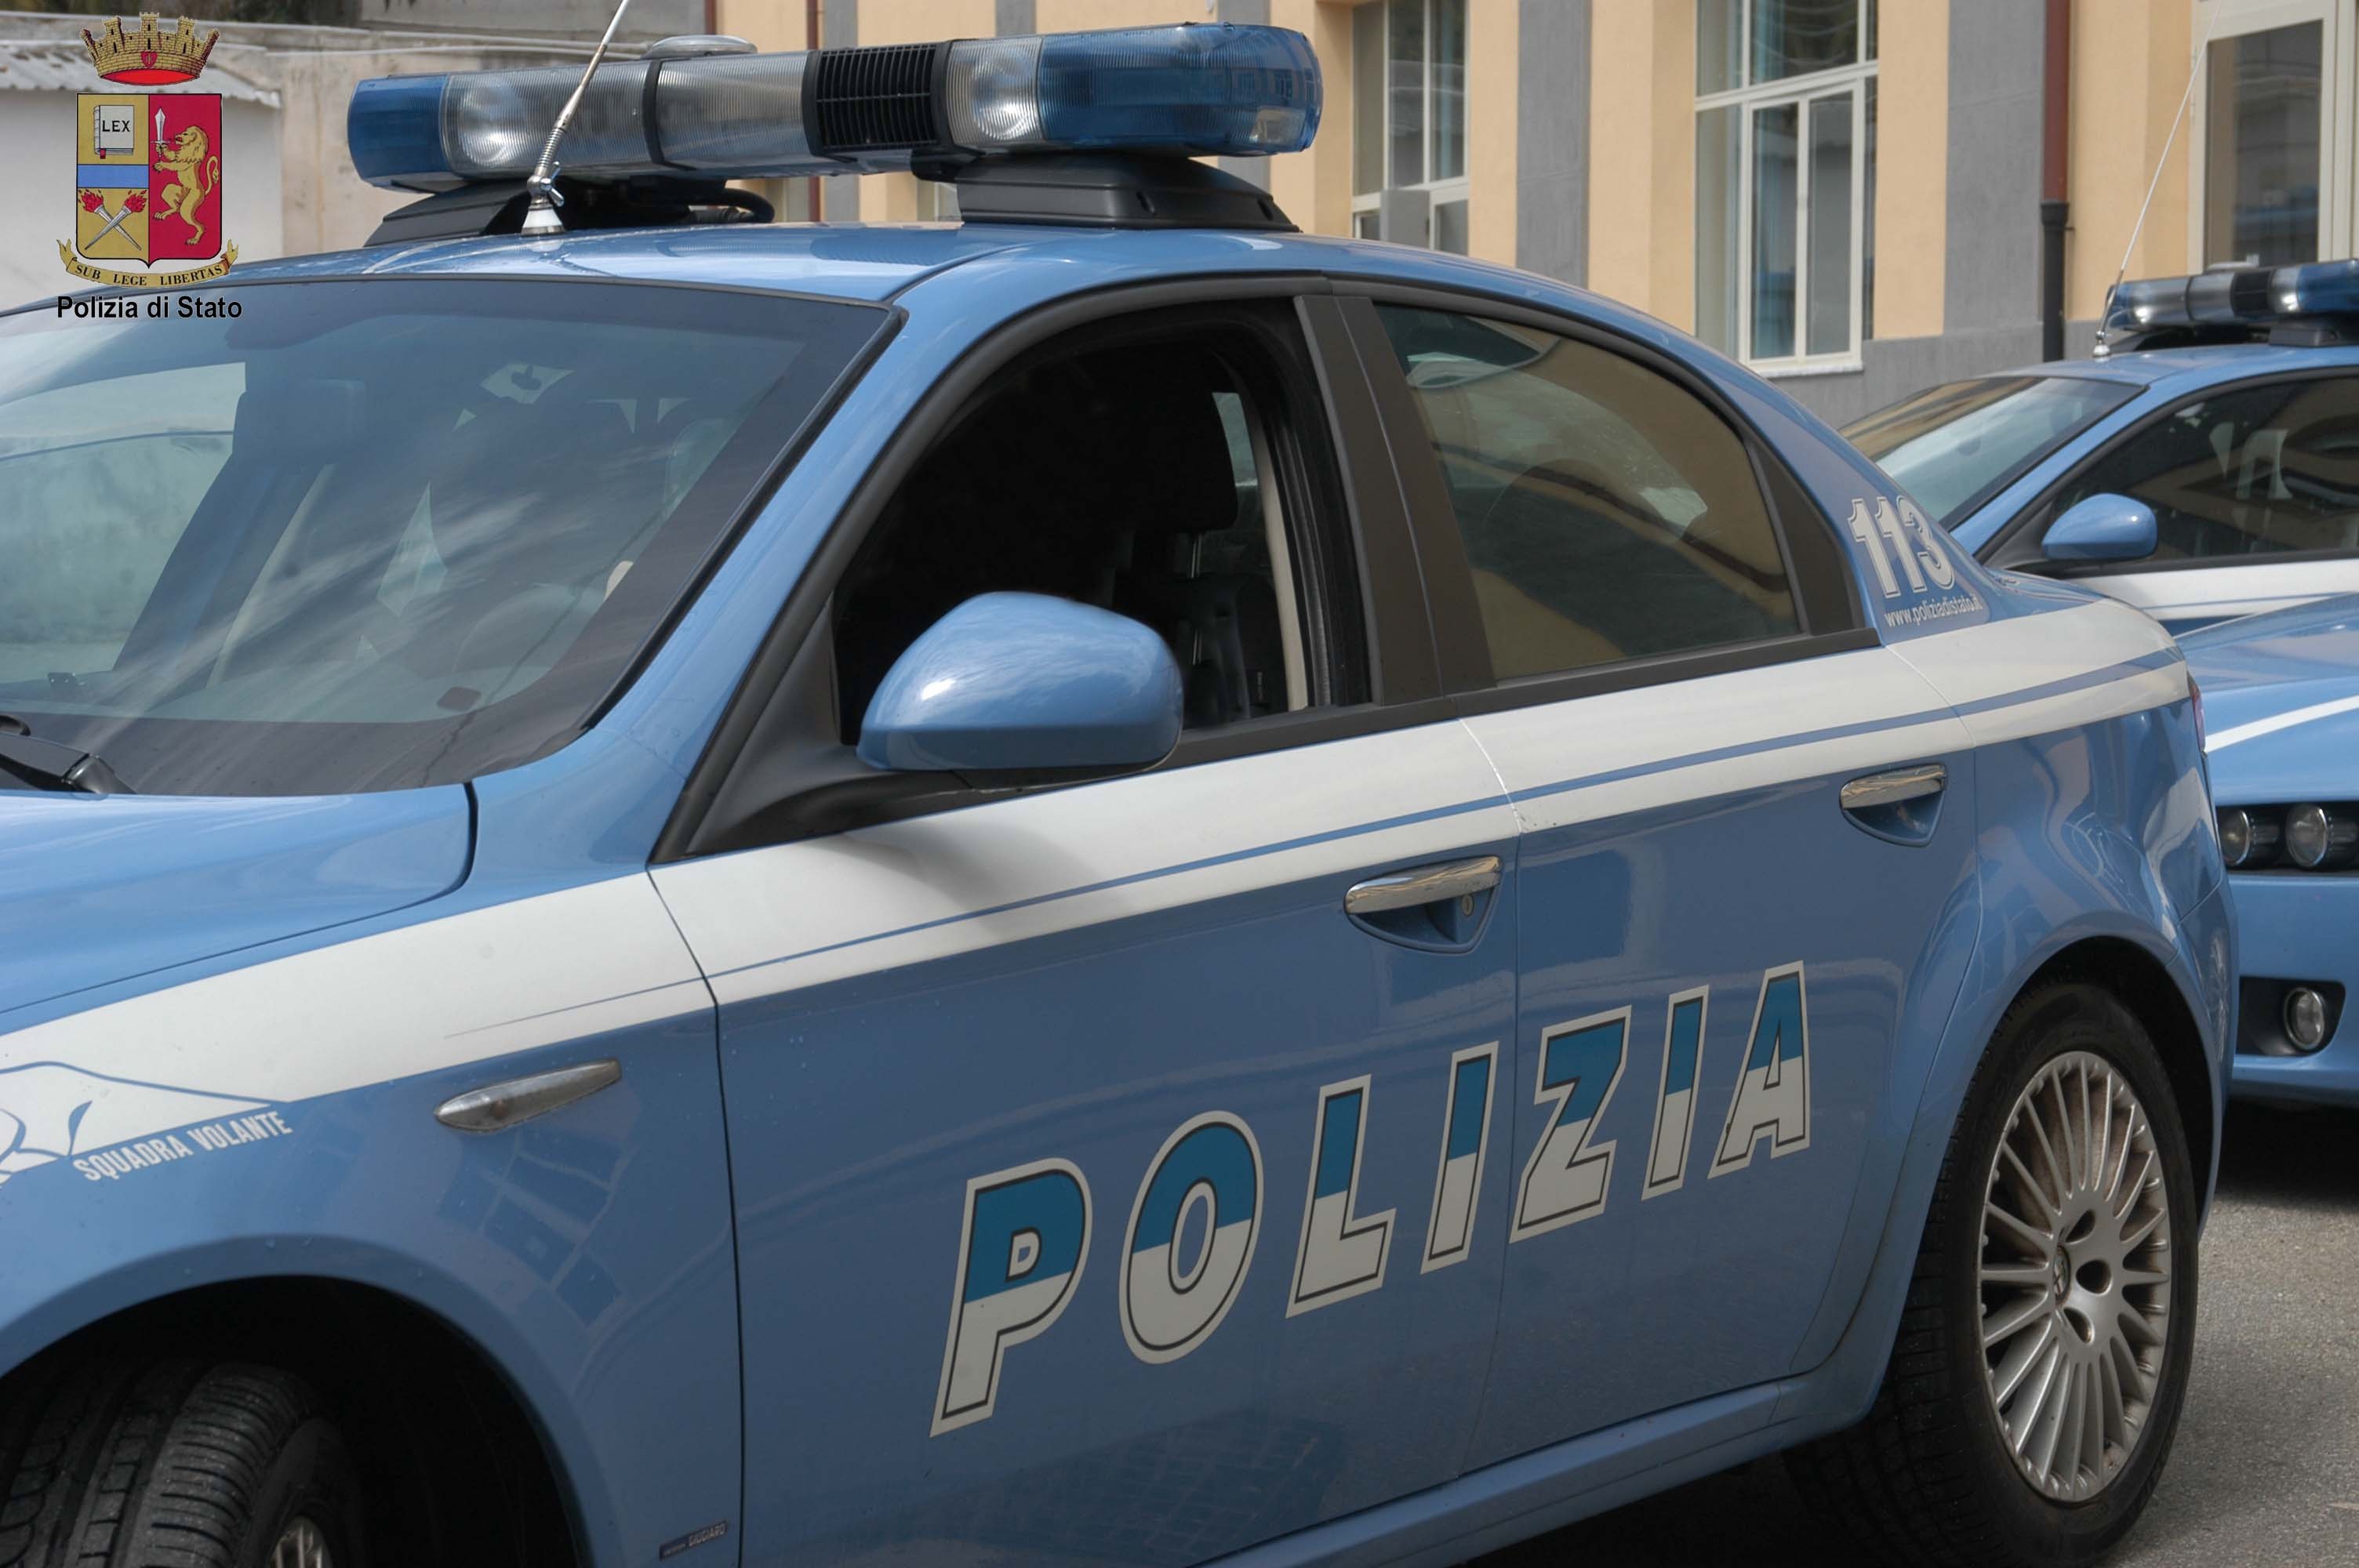 Report consuntivo dell’attività svolta dalla Polizia in Provincia di Trapani dal 11 al 17 novembre